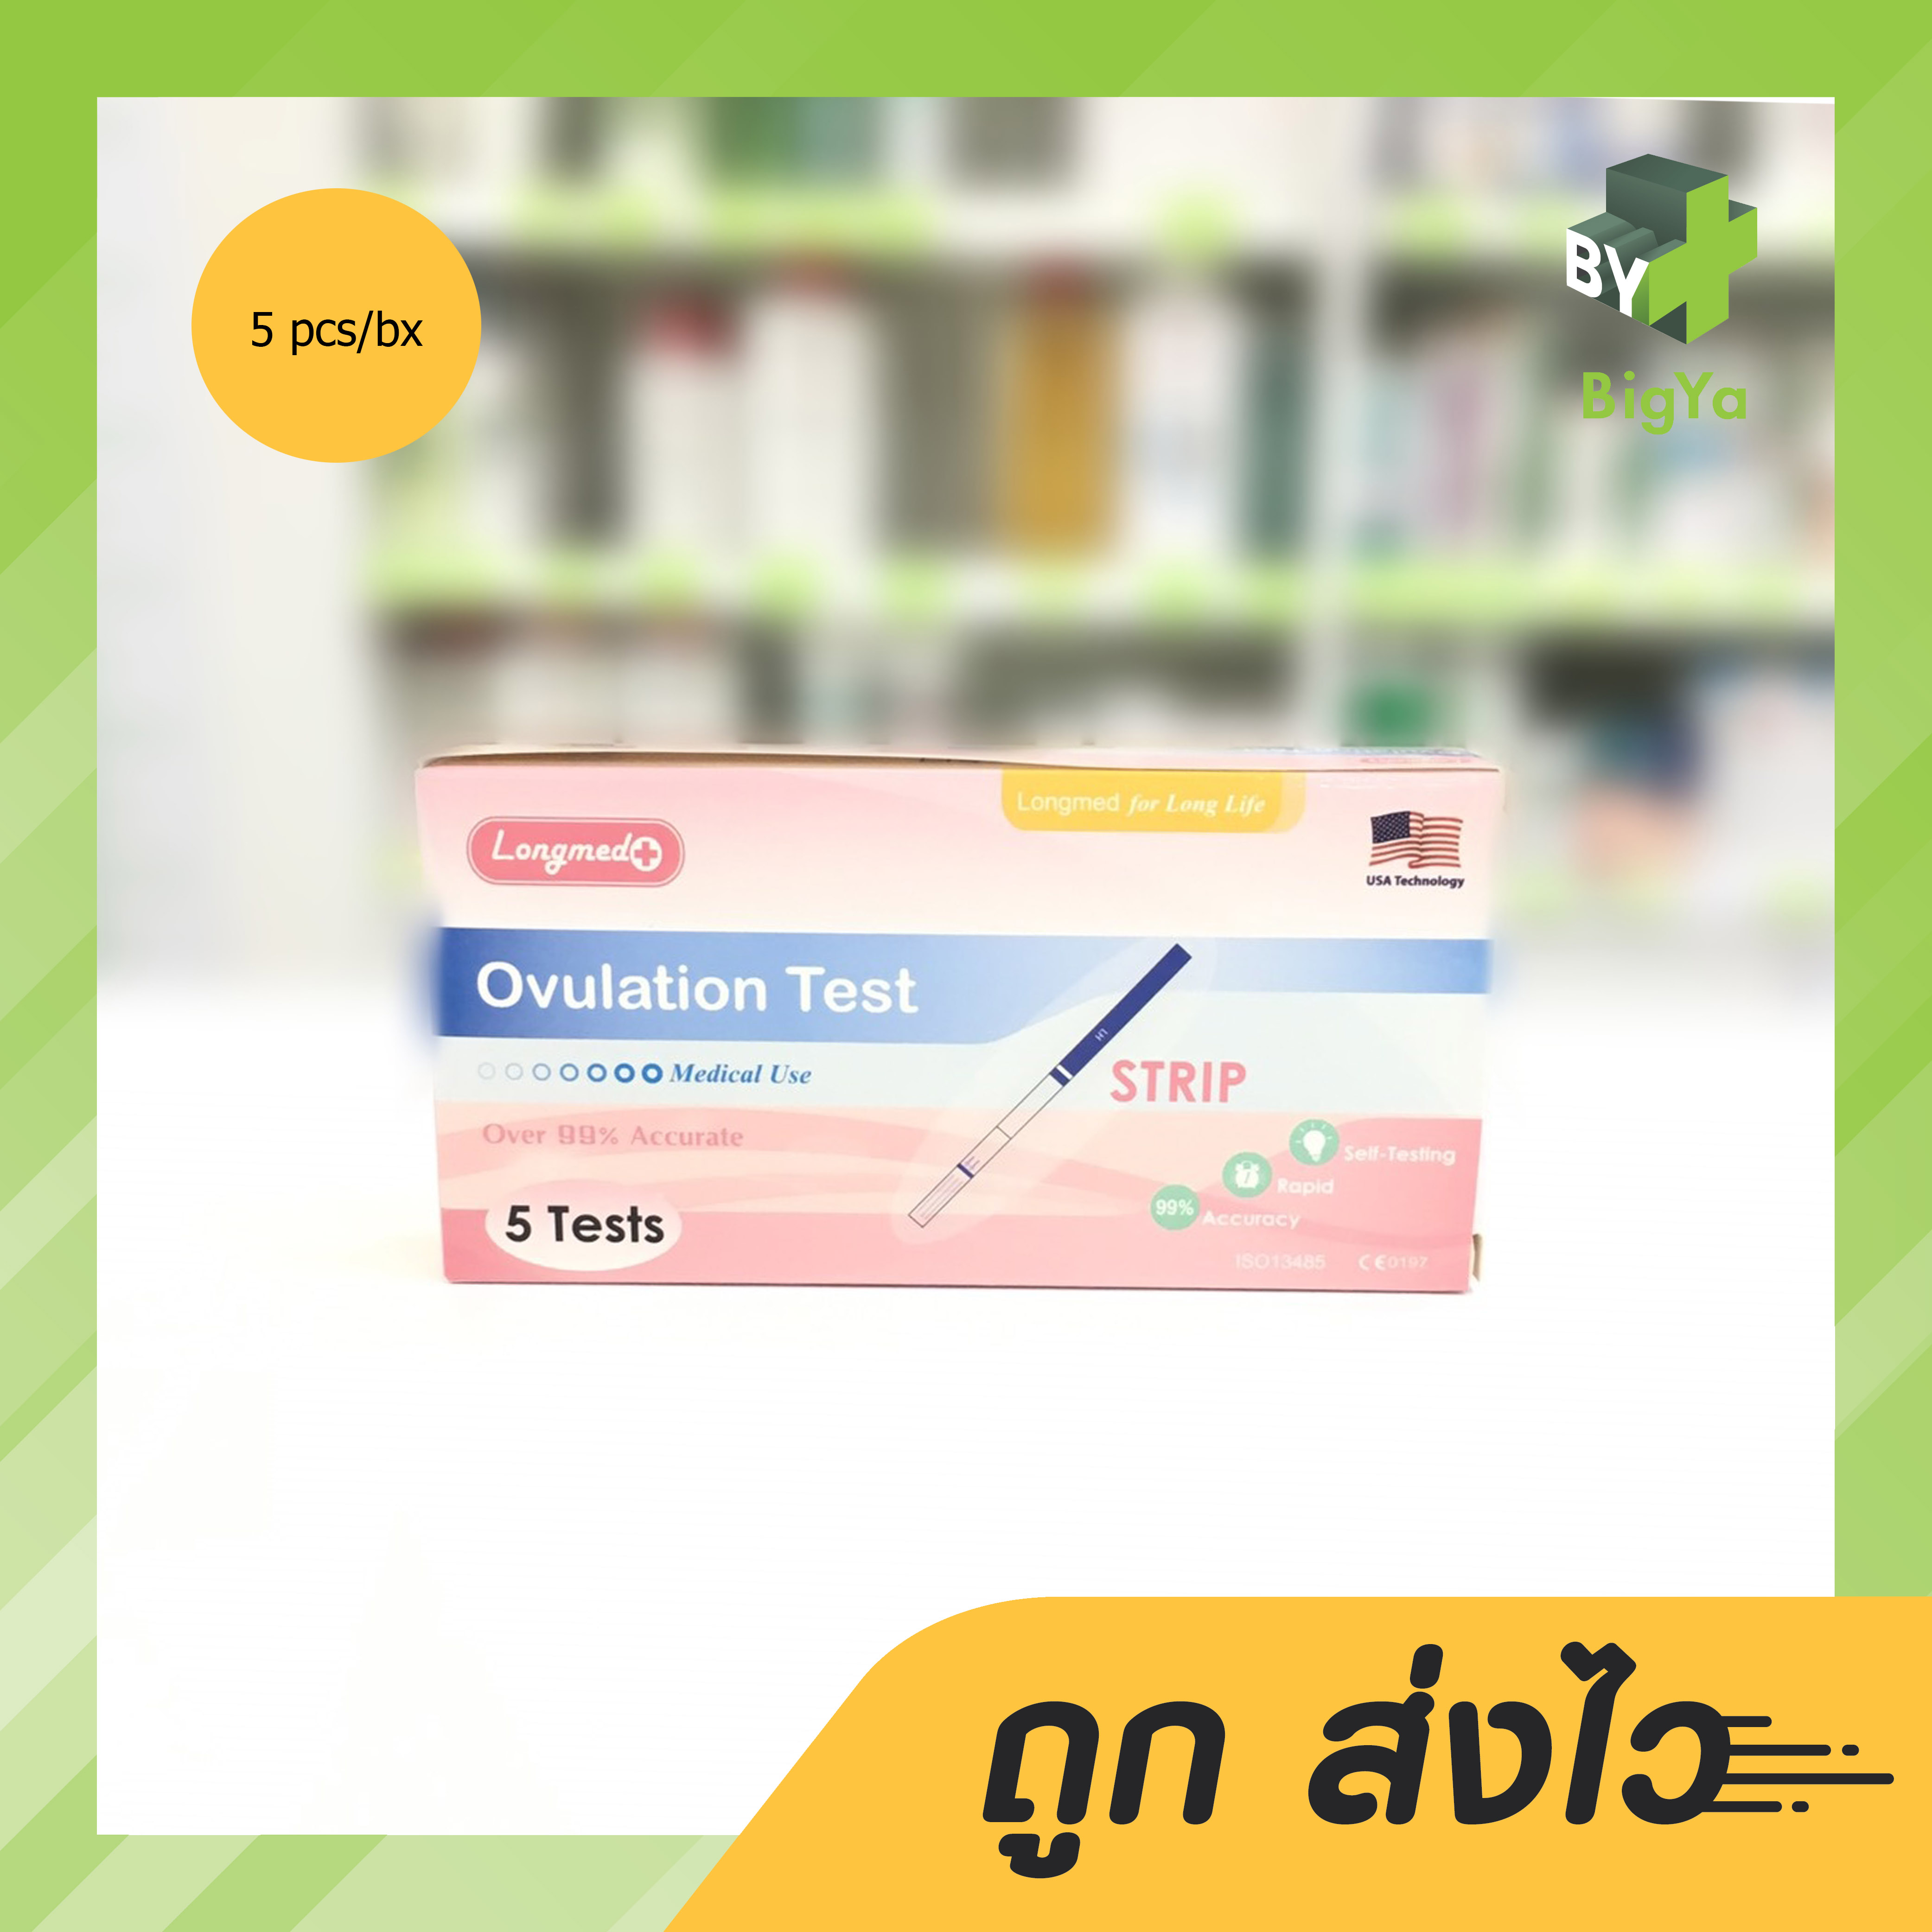 longmed ovulation test ลองเมด ที่ตรวจไข่ตกแบบจุ่ม ชุดตรวจหาวันตกไข่ 1 กล่อง [บรรจุ 5 Test]